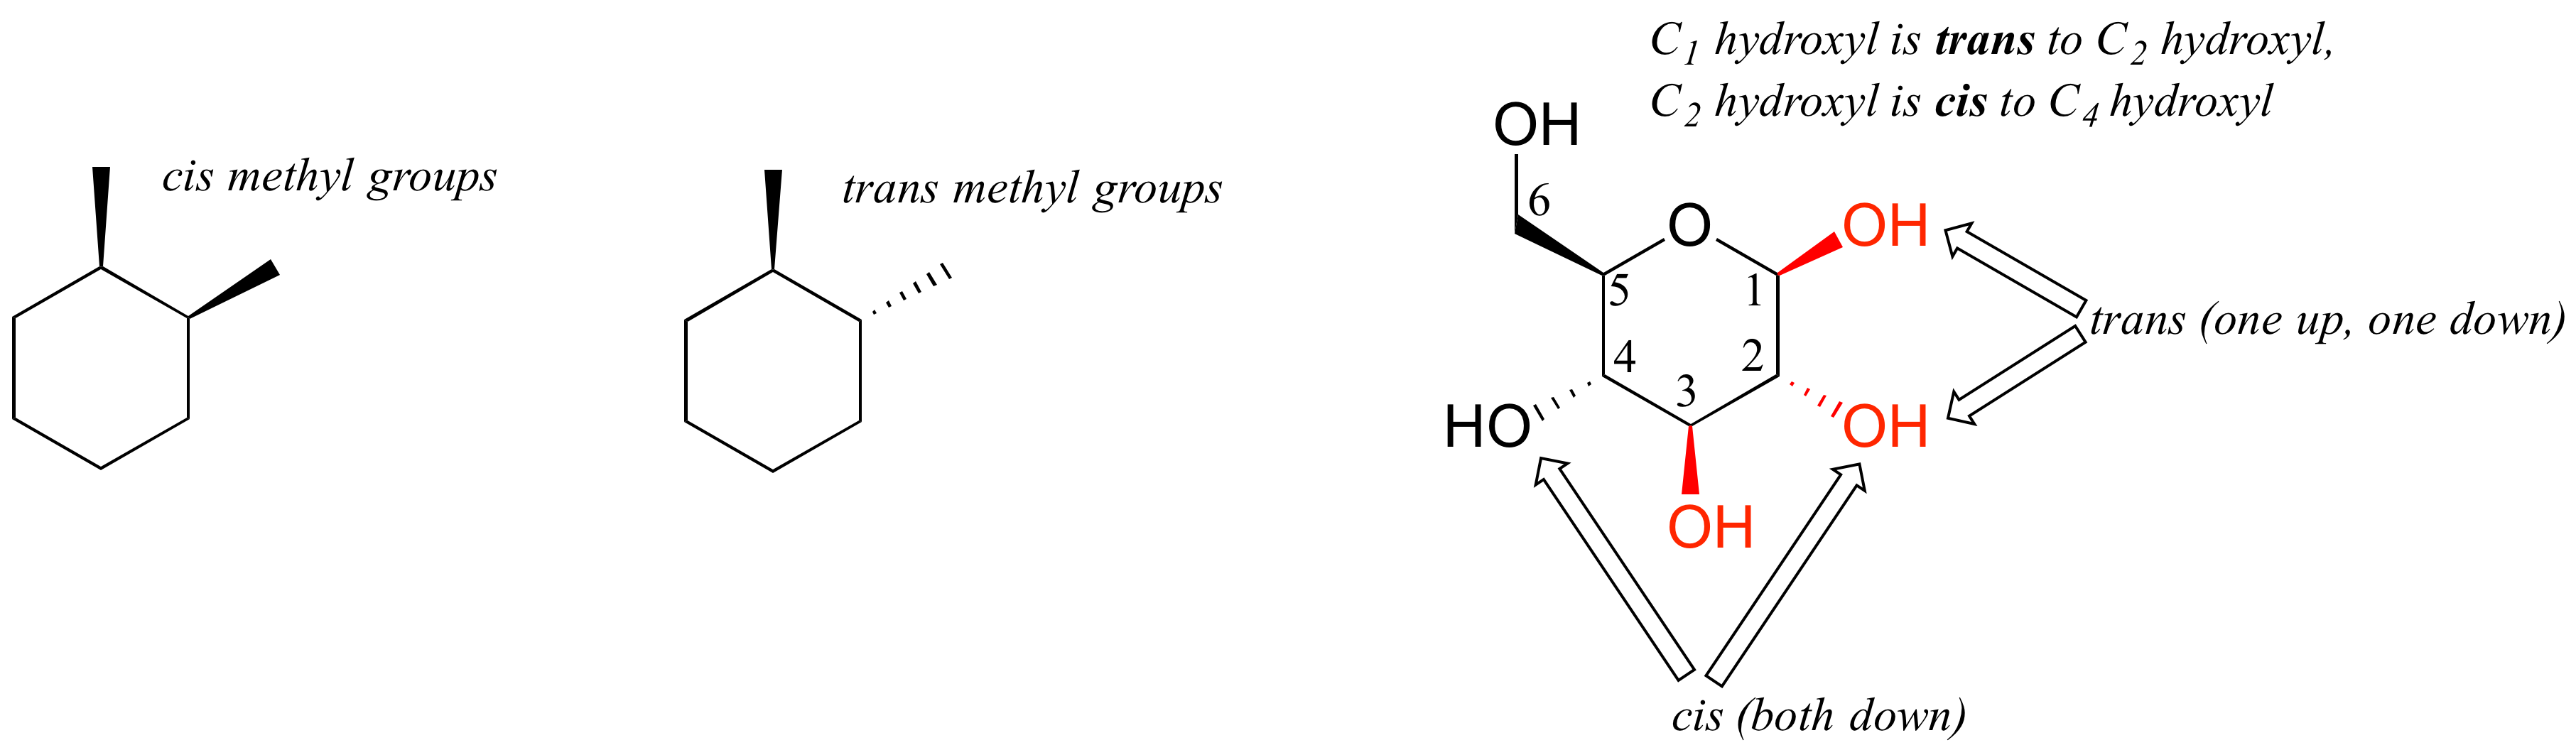 Dos ciclohexanos con dos sustituyentes metilo. Izquierda: ambos metilos son discontinuos; están en cis. Derecha: un metilo acuñado, un metilo discontinuo; están en trans. Glucosa cíclica utilizada como ejemplo. El hidroxilo C 1 es hidroxilo trans a C 2. El hidroxilo C 2 es hidroxilo cis a C 4.